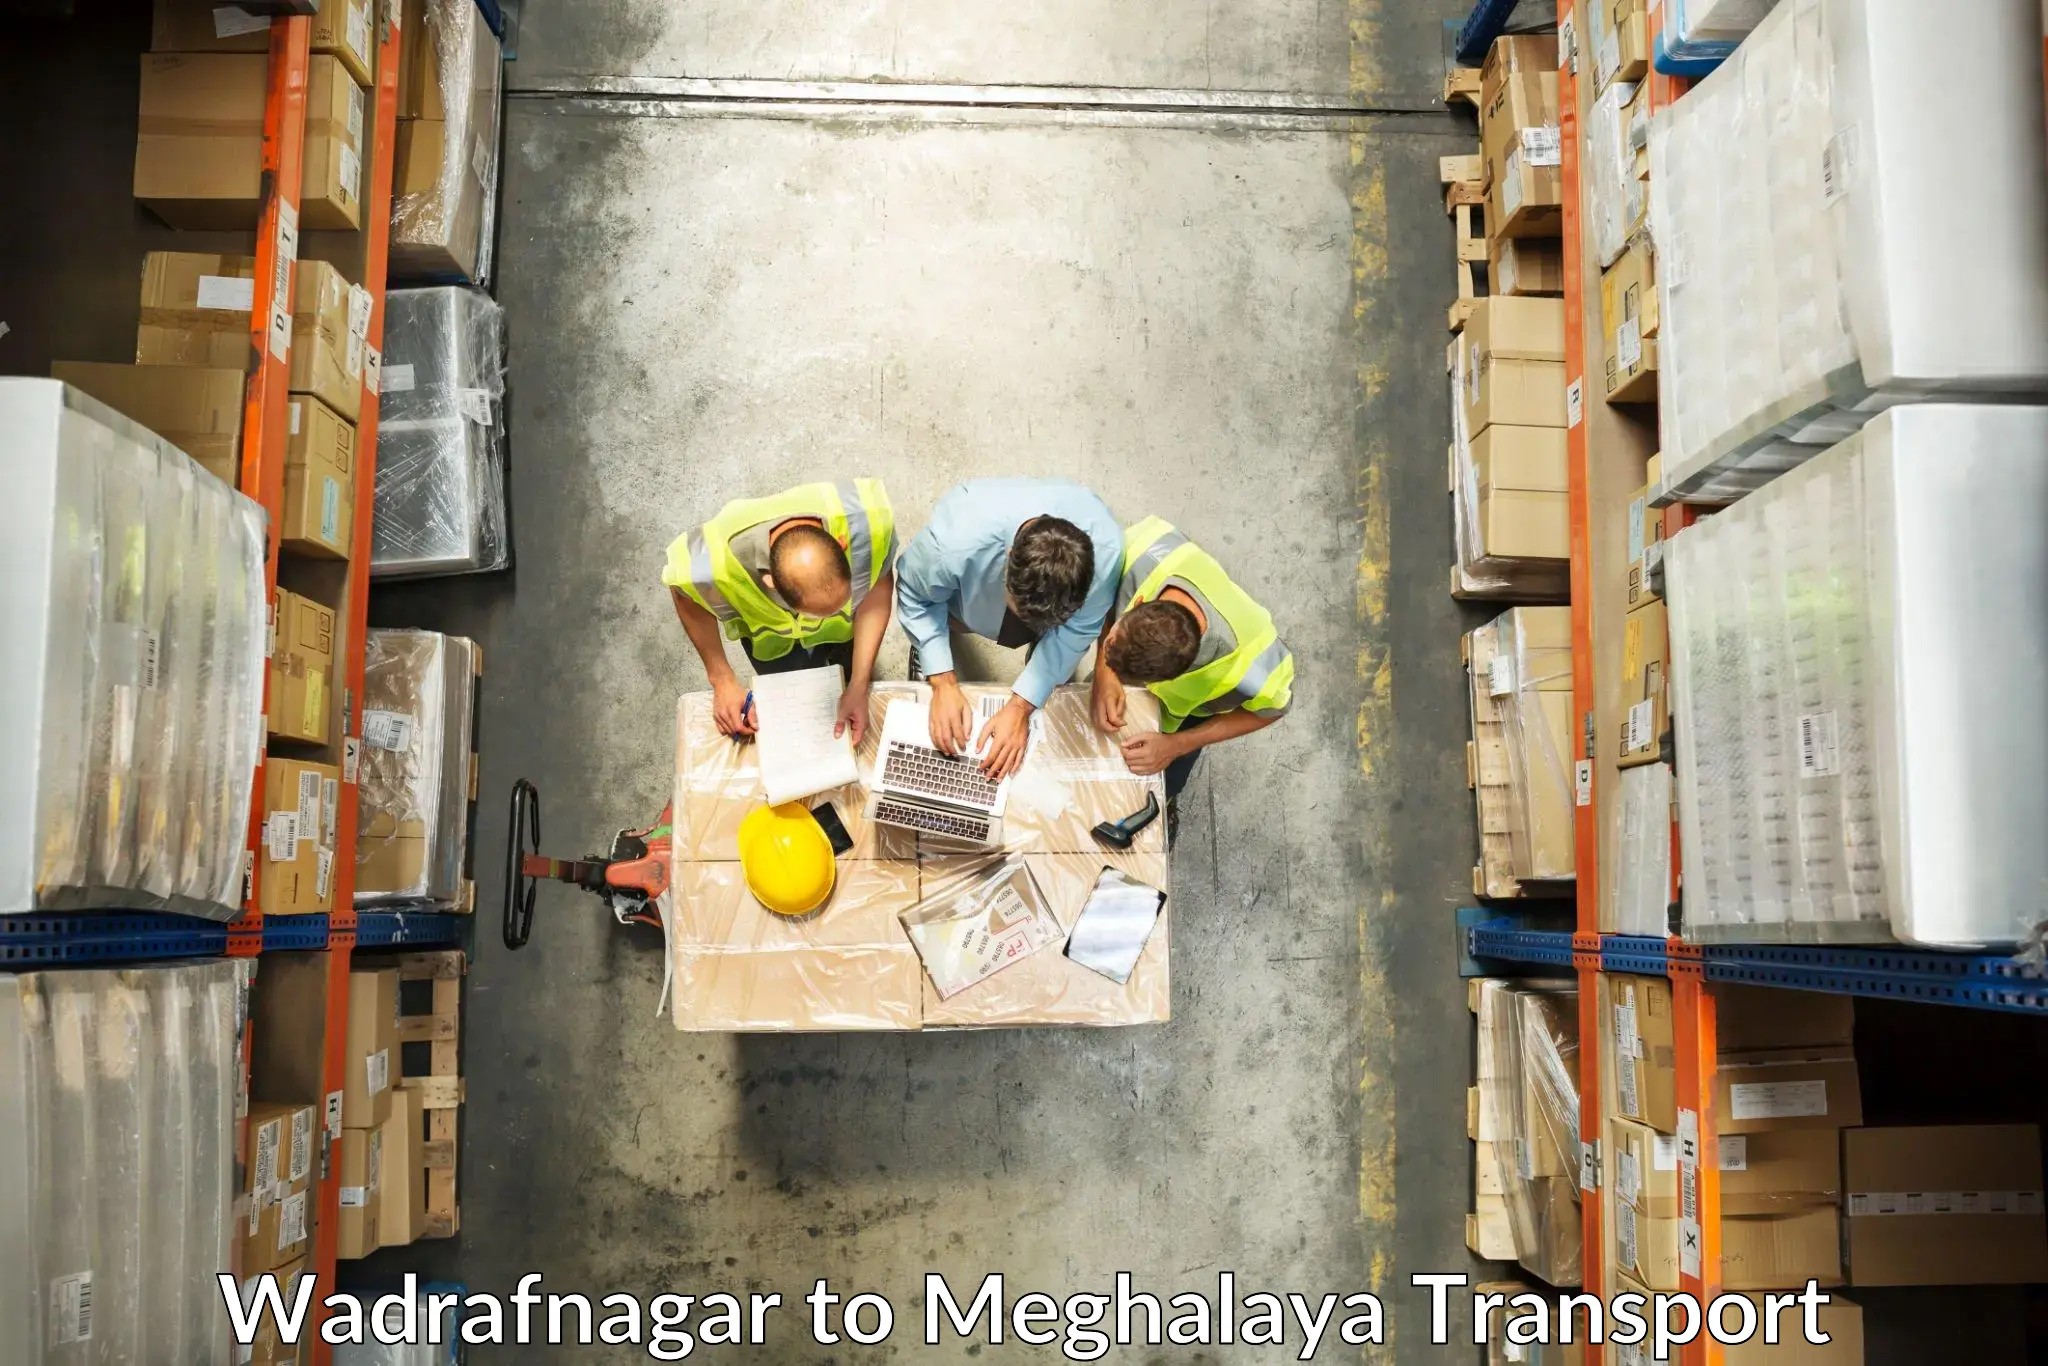 Truck transport companies in India Wadrafnagar to Marshillong